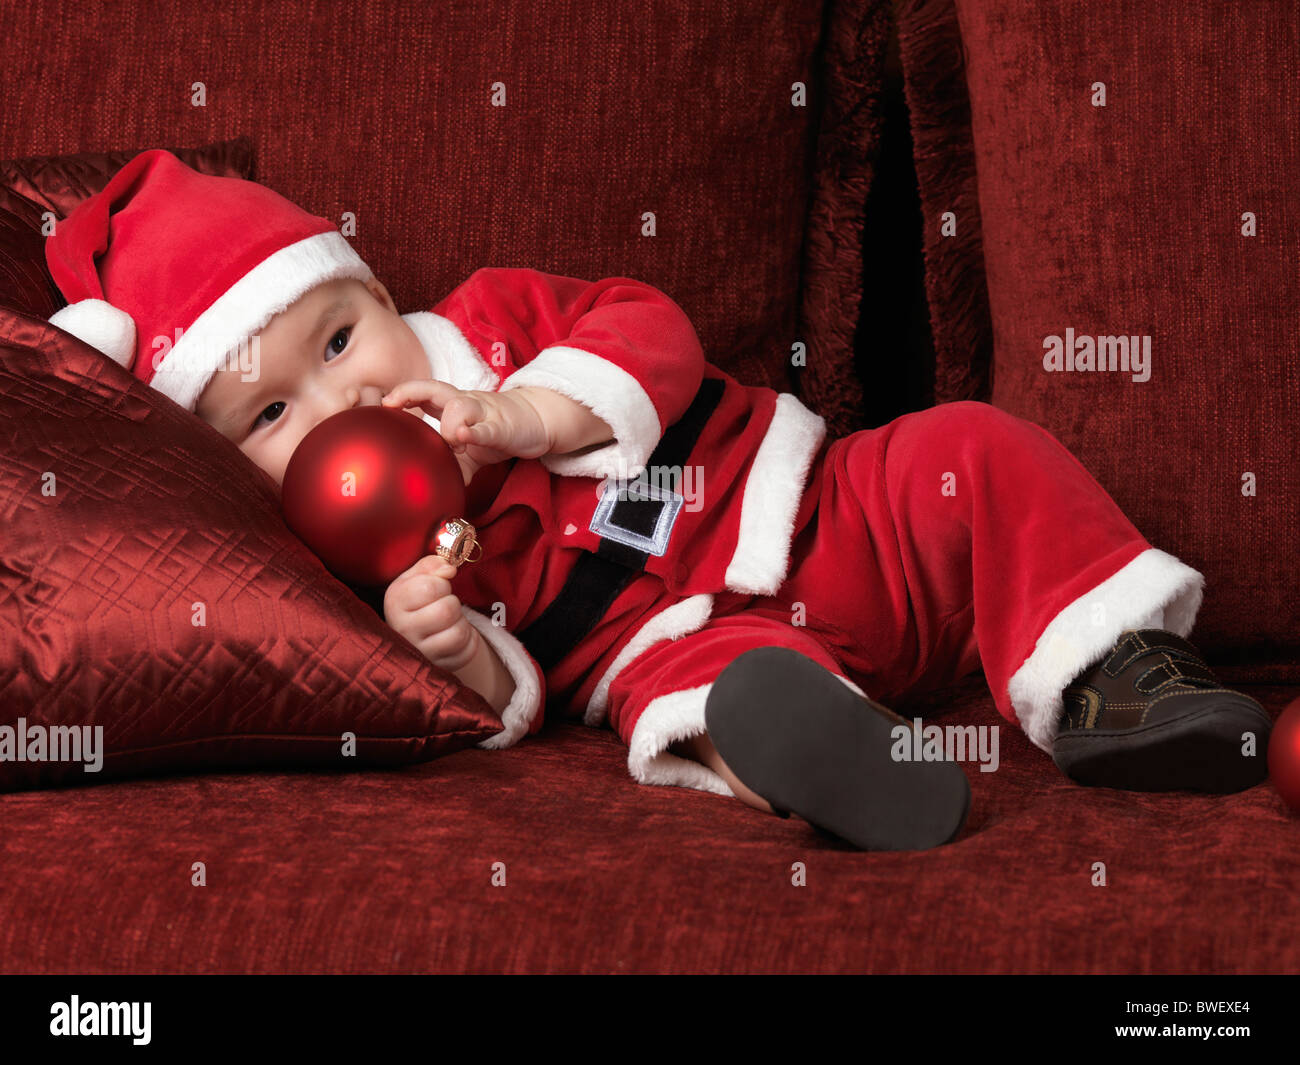 Lizenz erhältlich bei MaximImages.com – ein sechs Monate alter Junge im Weihnachtsmann-Kostüm, der eine rote Kugel in der Hand hält Stockfoto